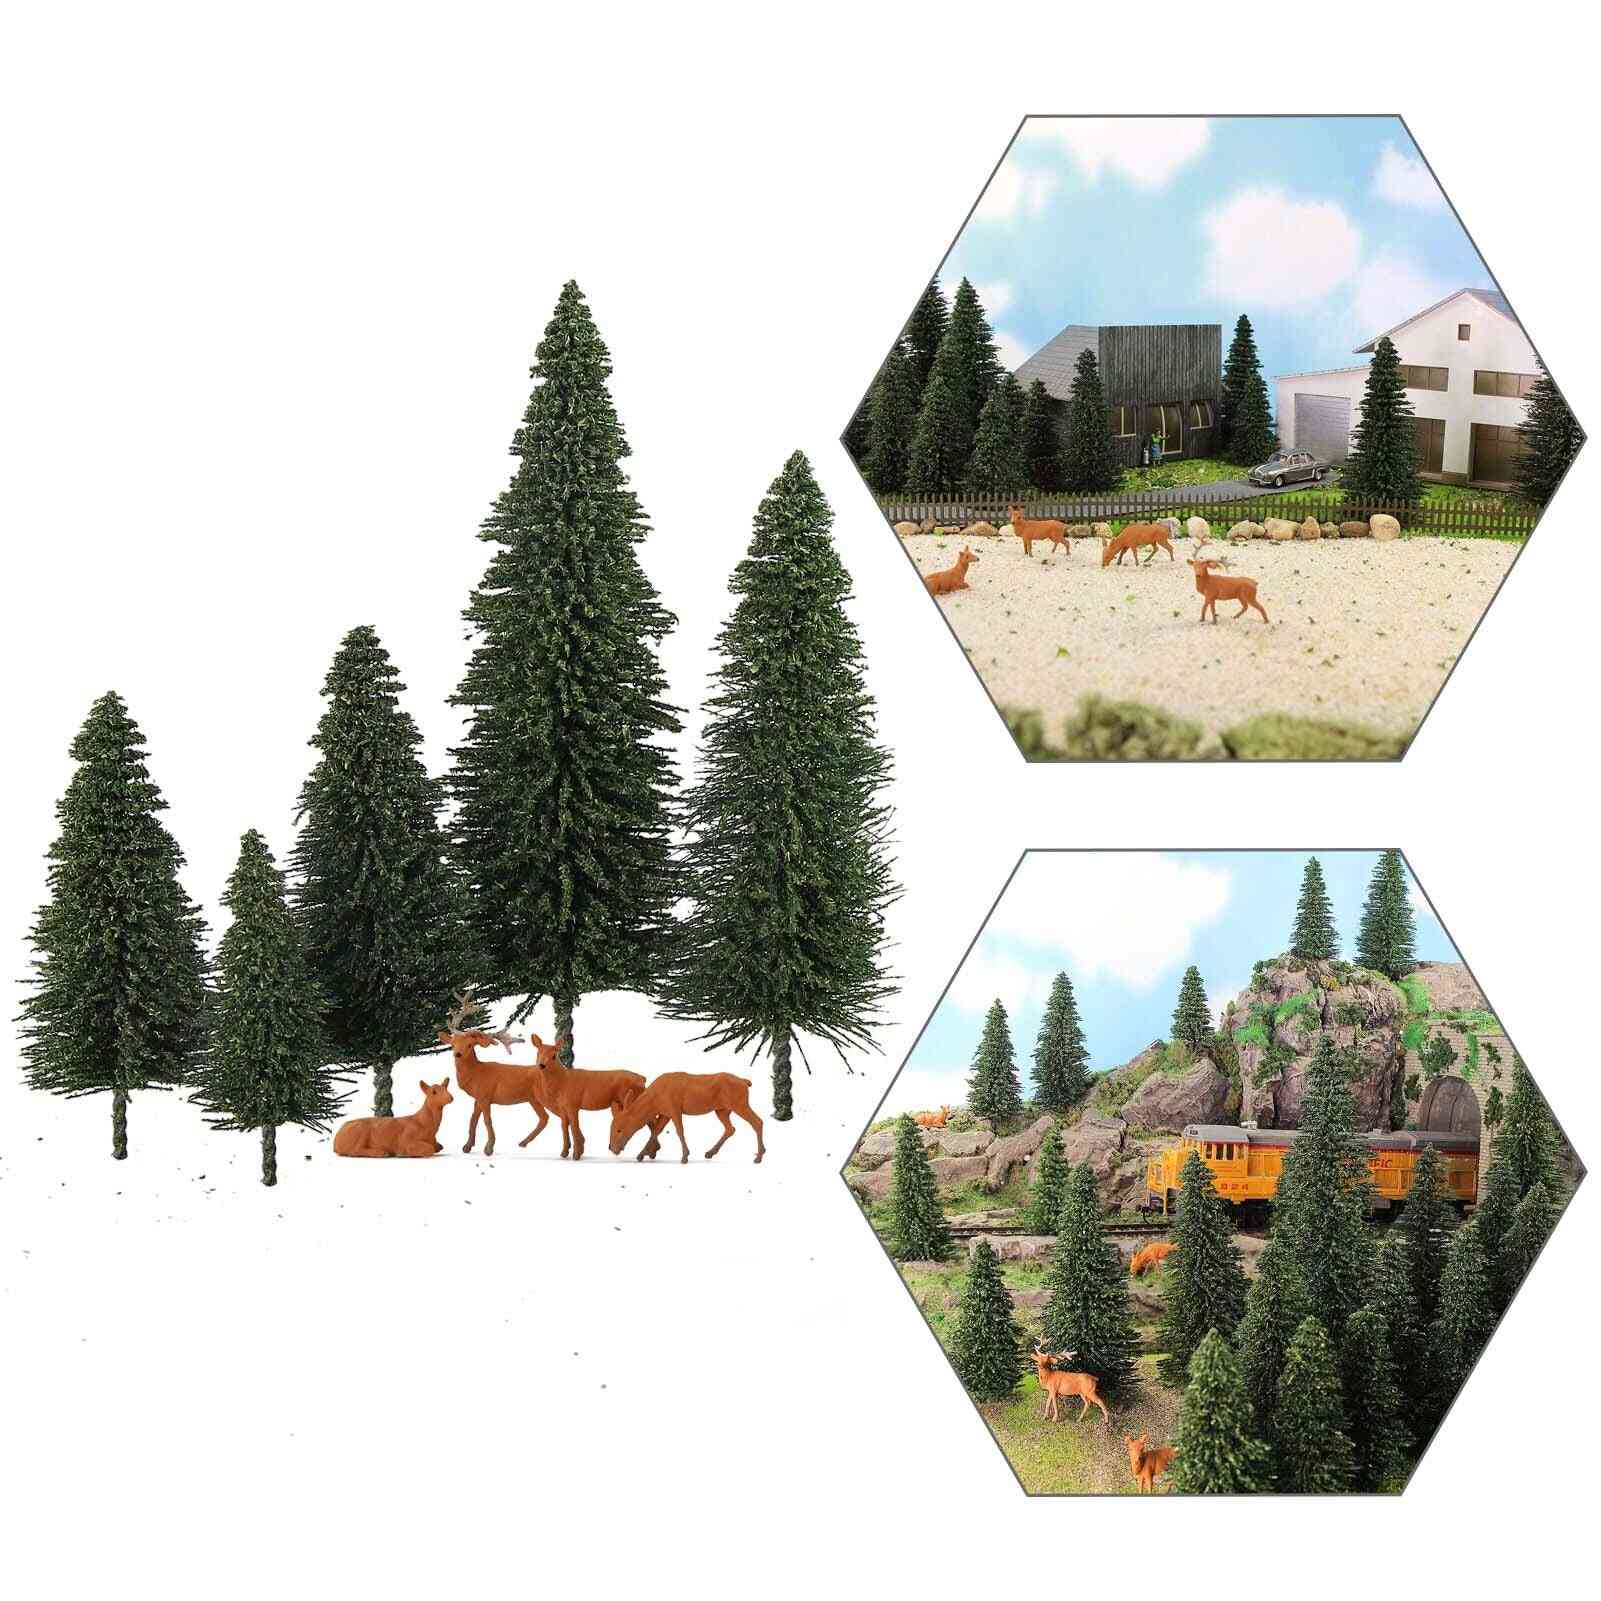 Modello alberi di pino pini verdi scala 1:87 modello alce cervi plastico ferroviario layout mini scenario